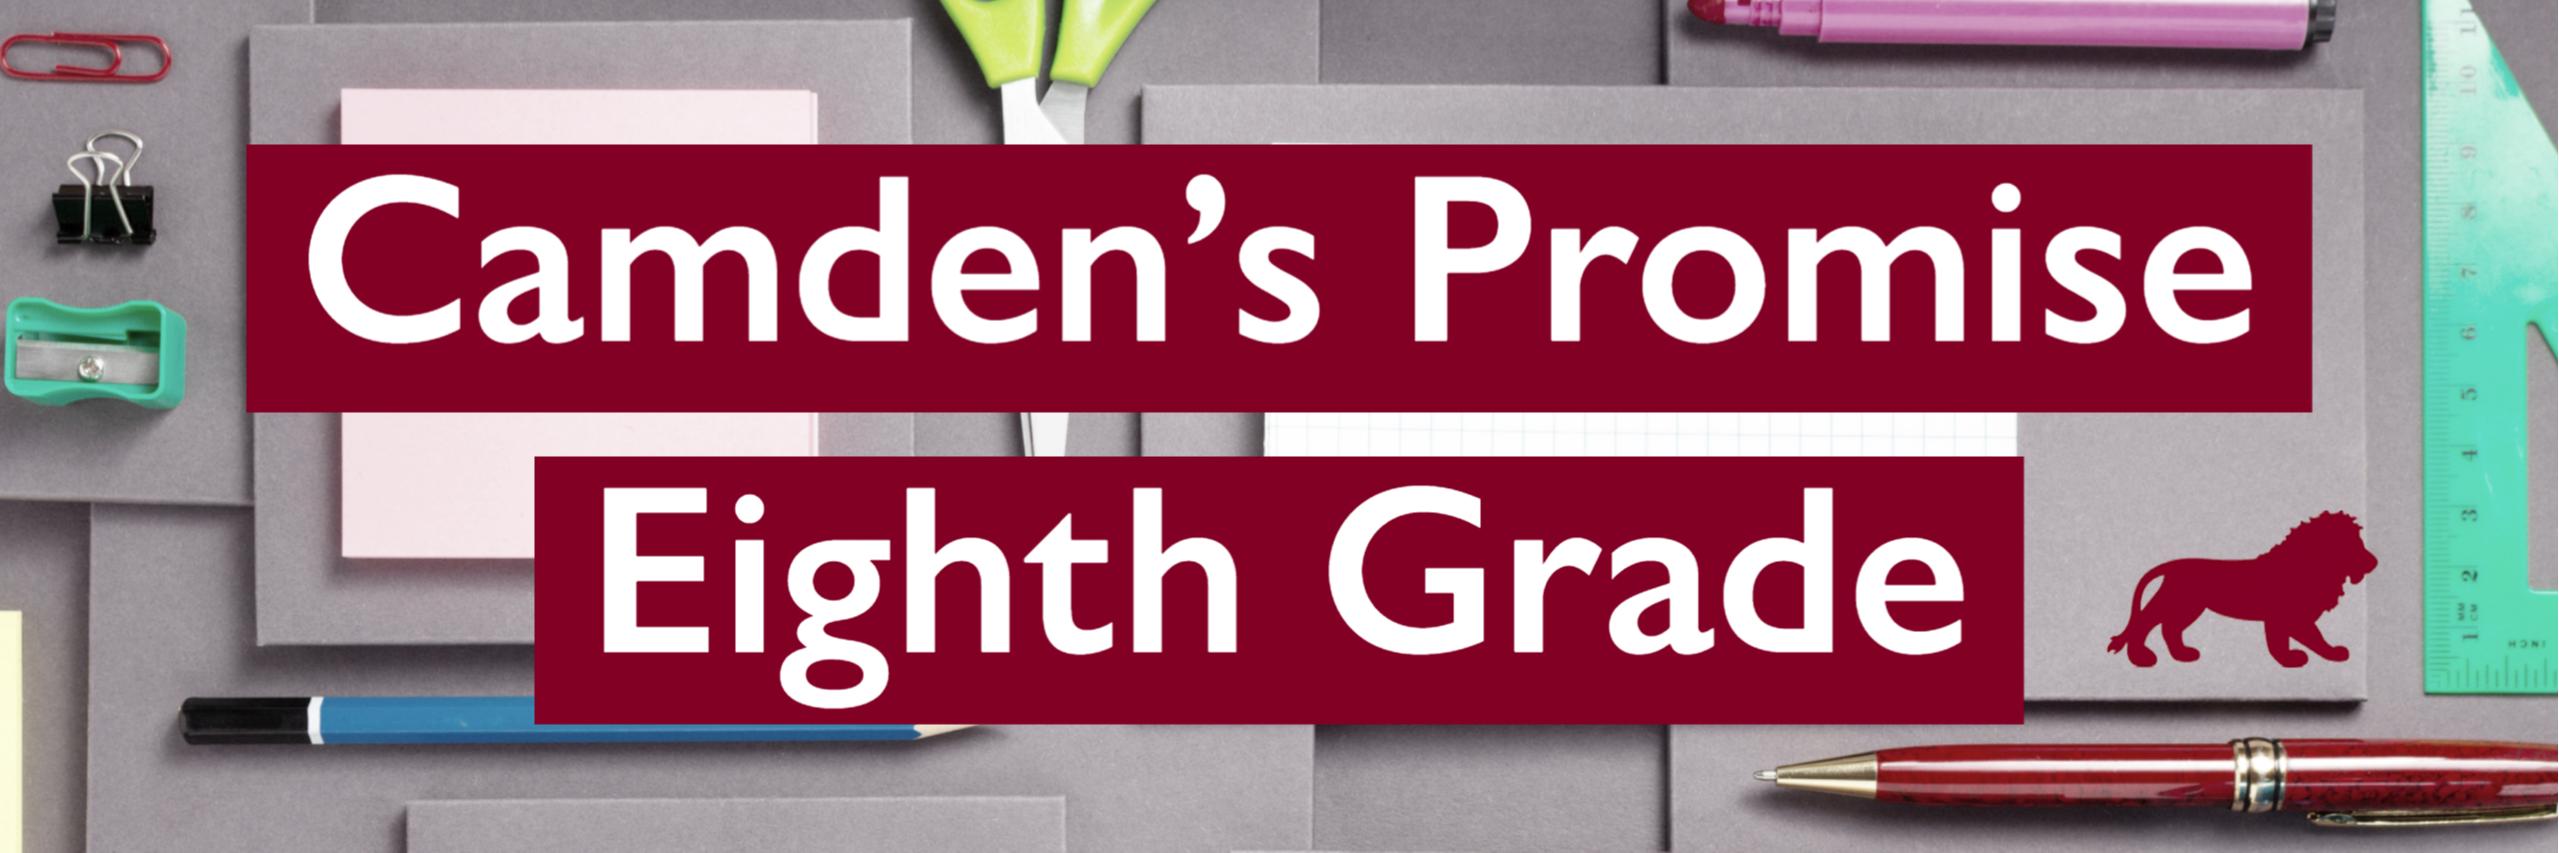 Camden's Promise Eighth Grade